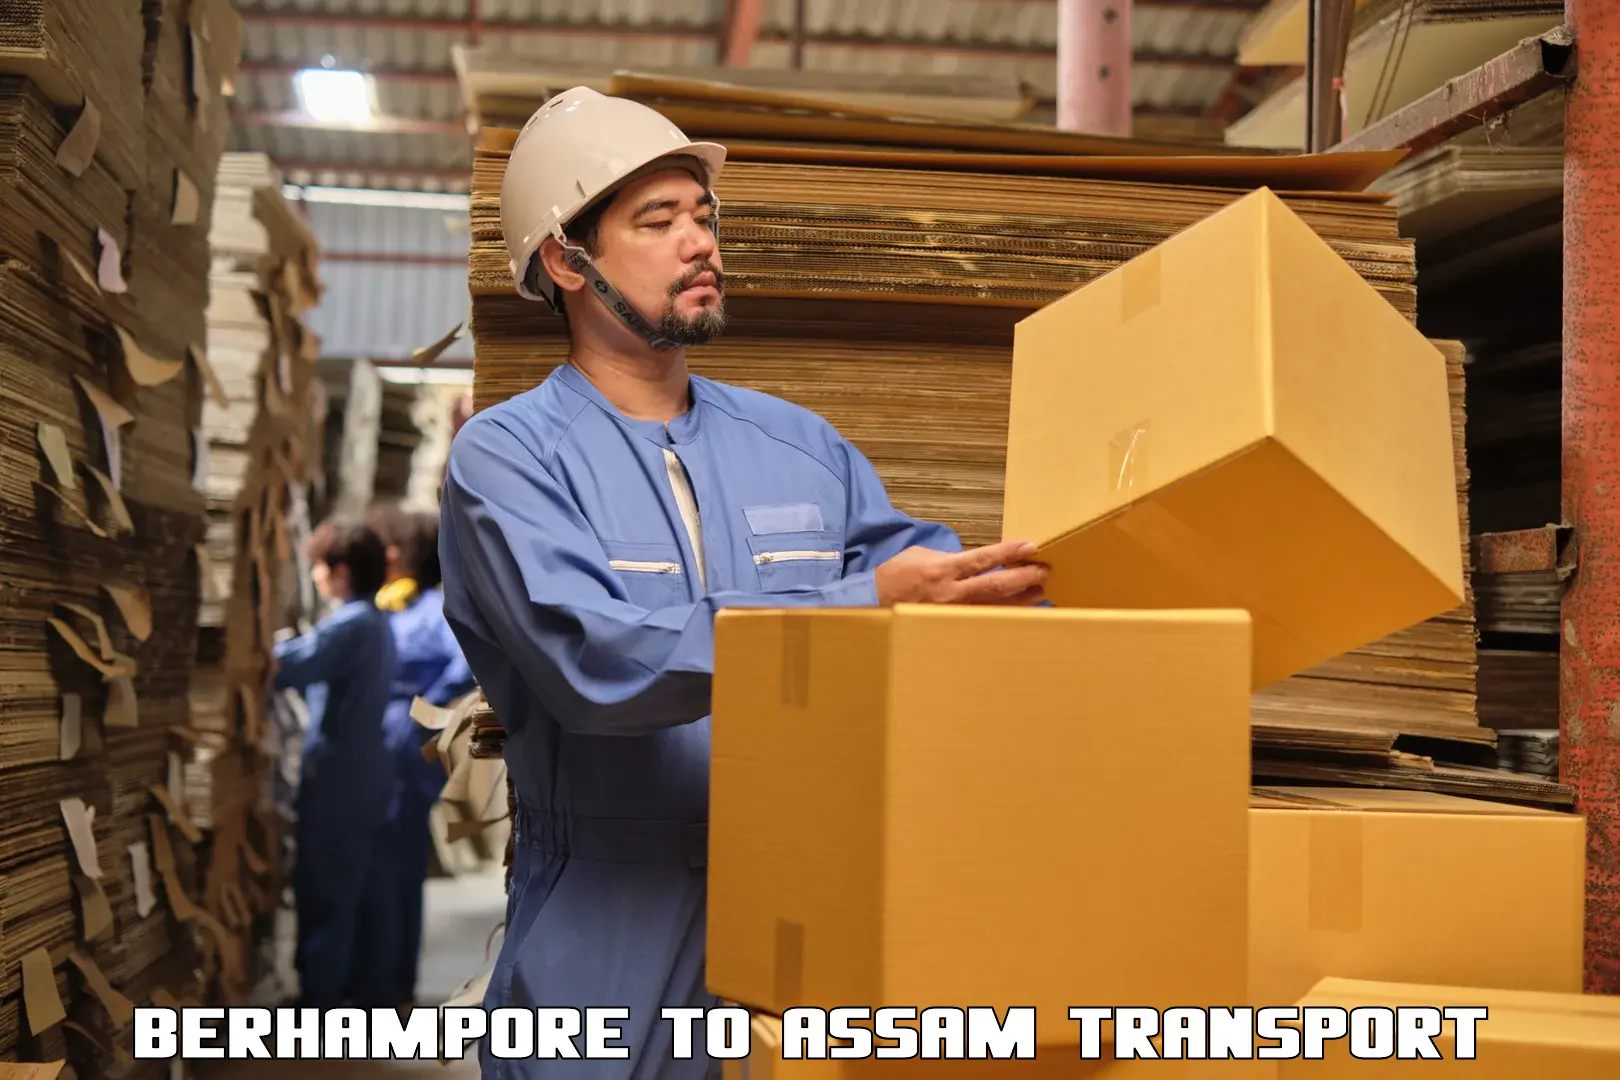 International cargo transportation services Berhampore to Dergaon